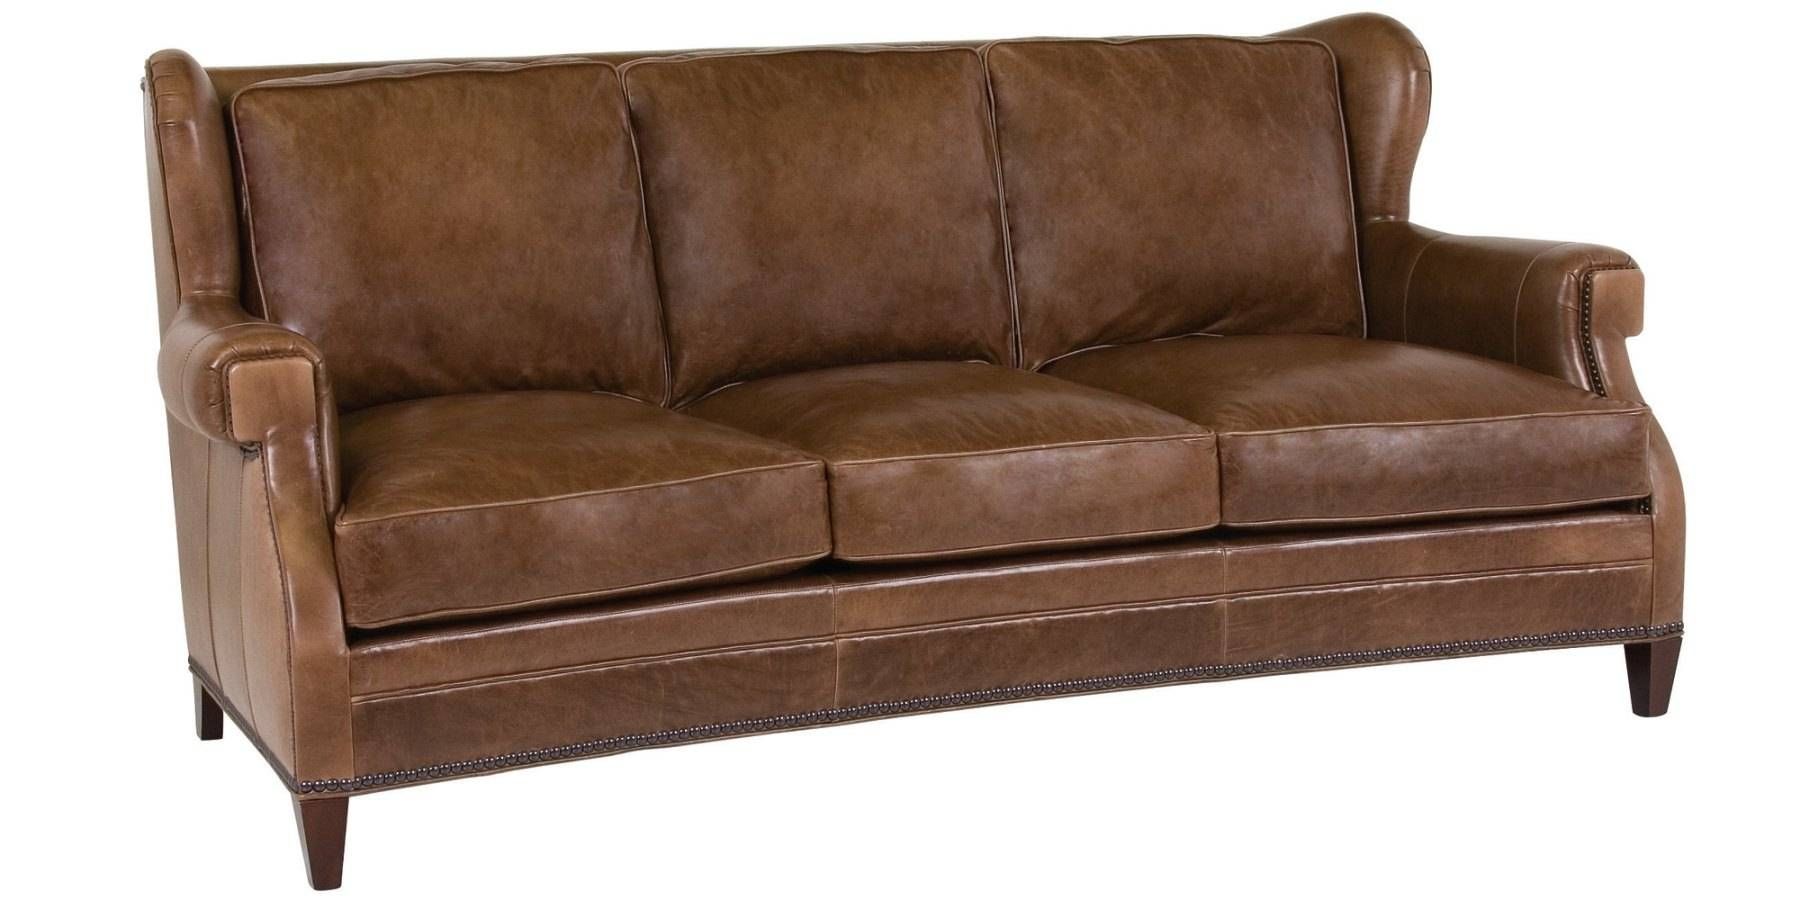 abbyson brown leather sofa nailhead trim